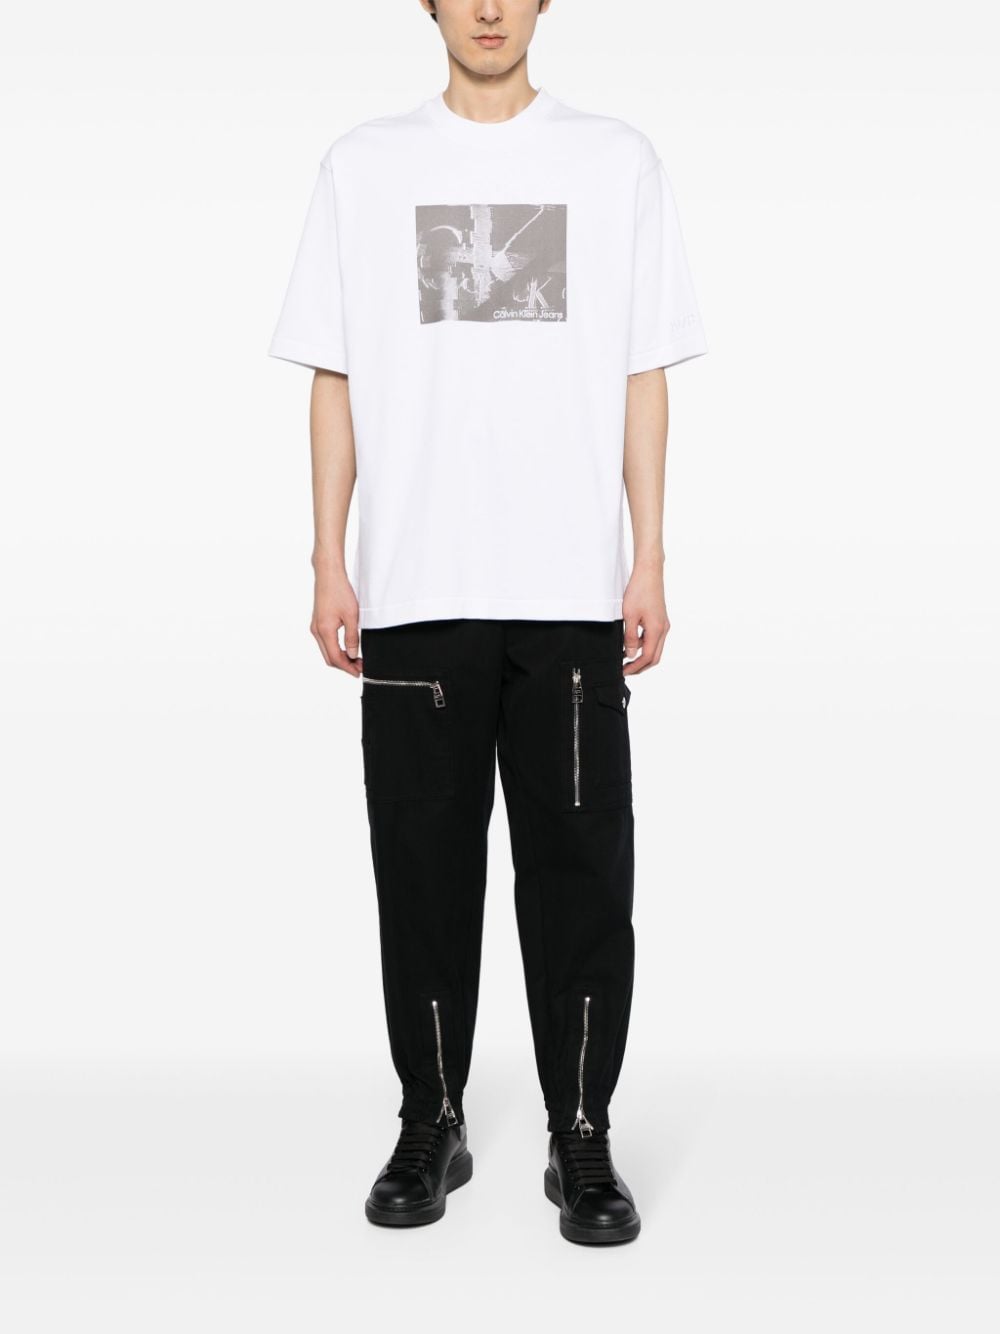 Calvin Klein T-shirt met logoprint - Wit